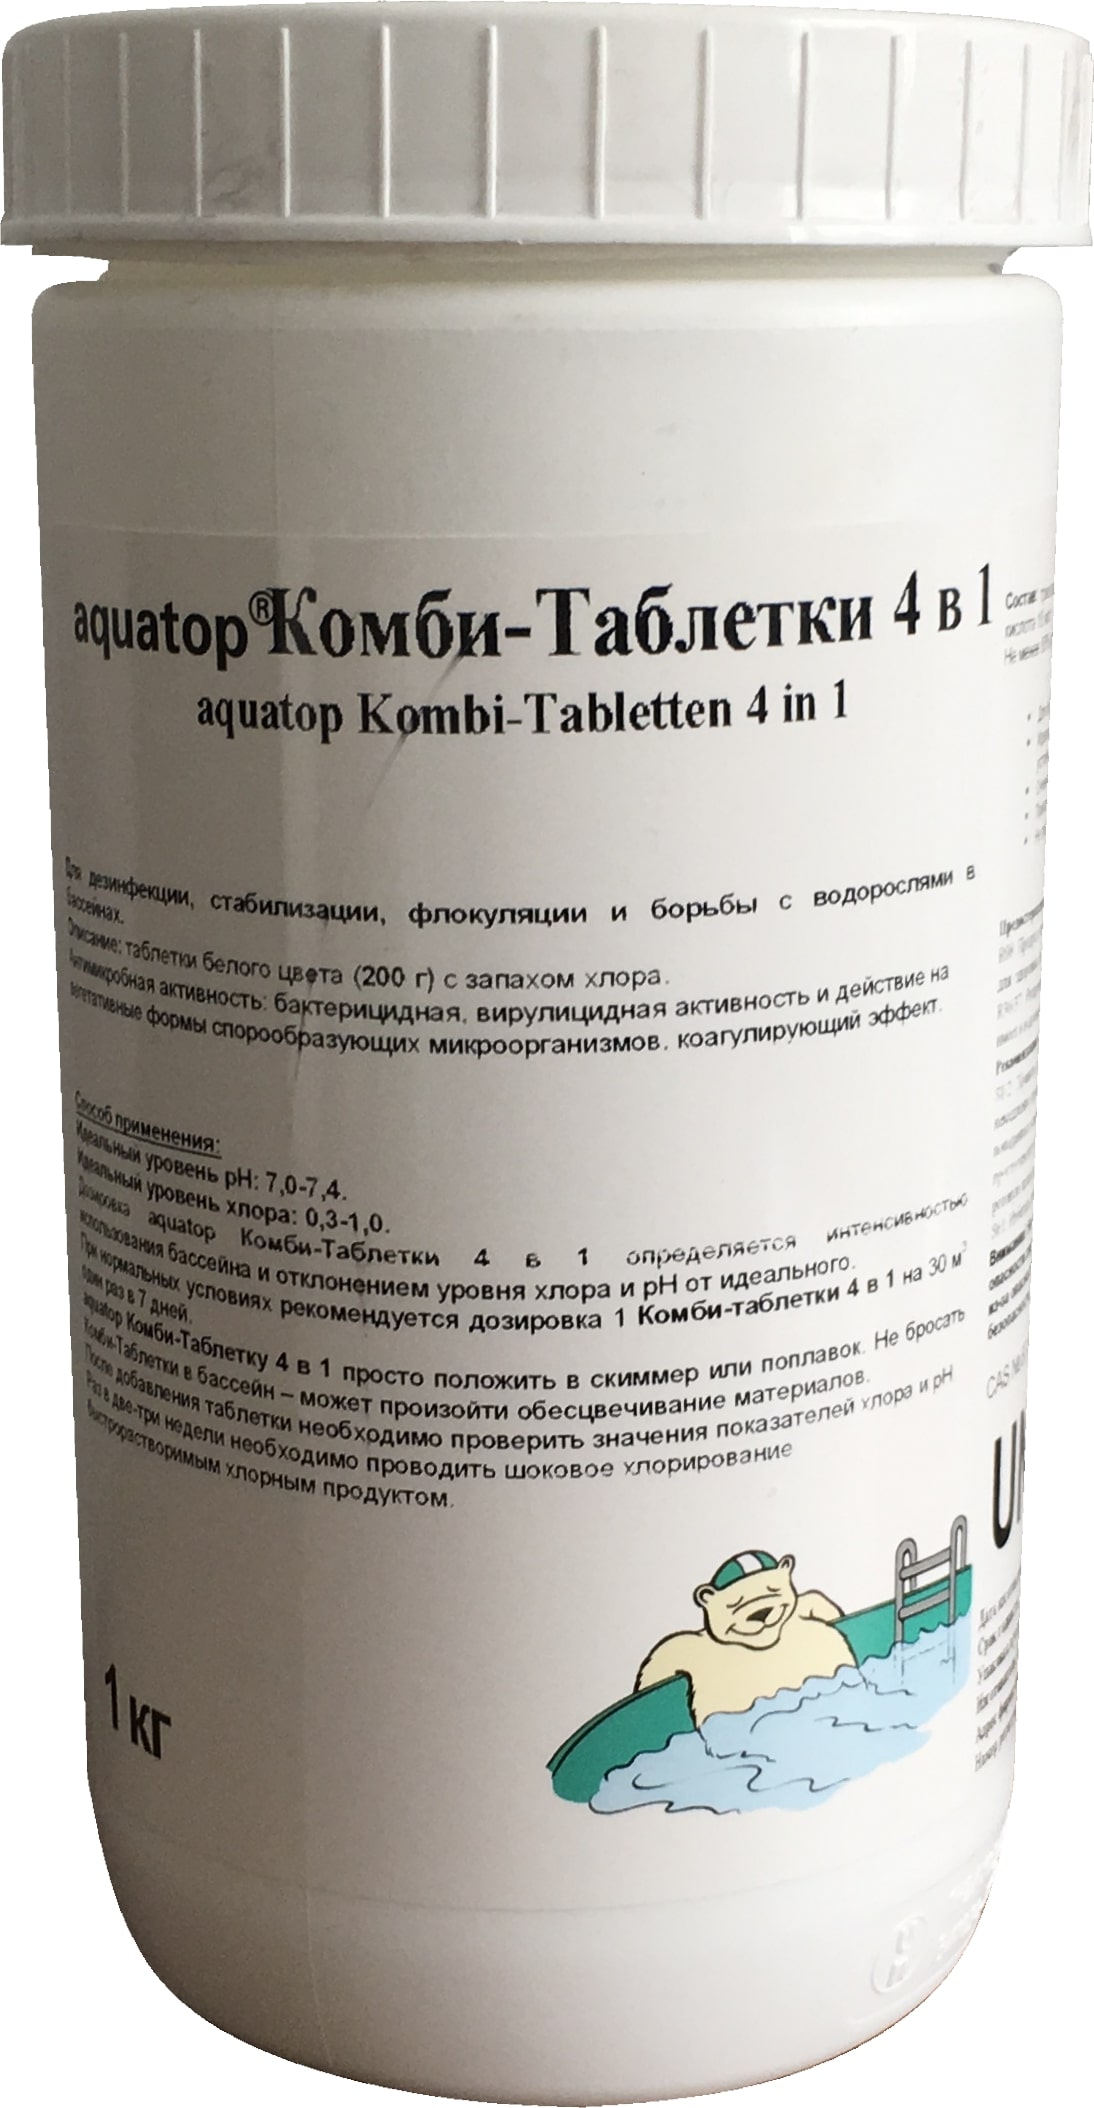 Комби-Таблетки 4в1 в табл.200г. 90% активного хлора.  (Хлор, флокулянт, альгицид, рН) - 1кг